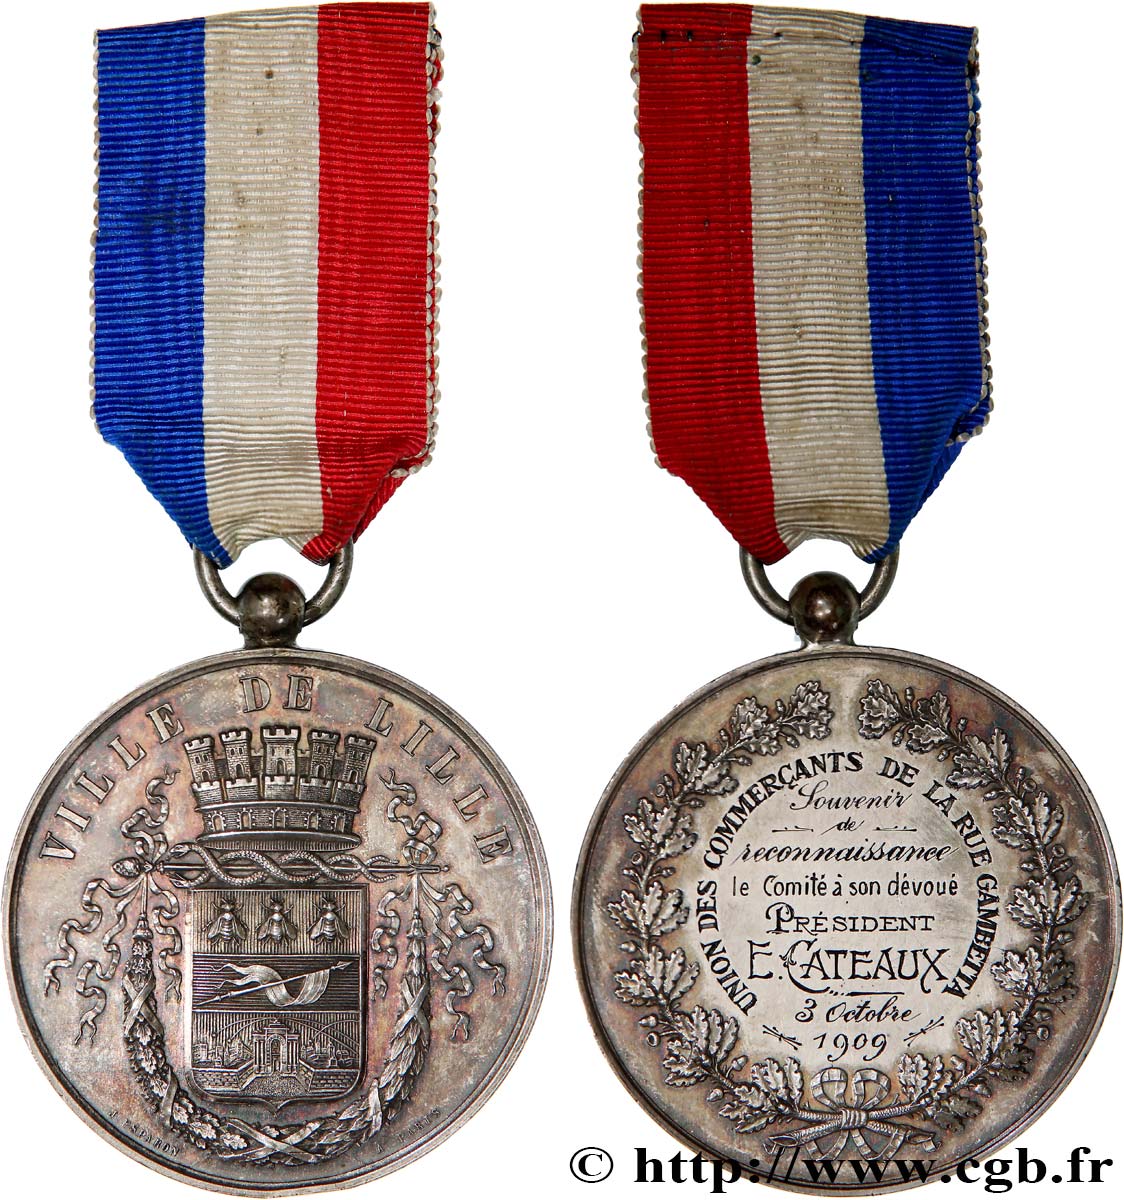 LILLE Médaille, Souvenir de reconnaissance, Union des commerçants de la rue Gambetta TTB+